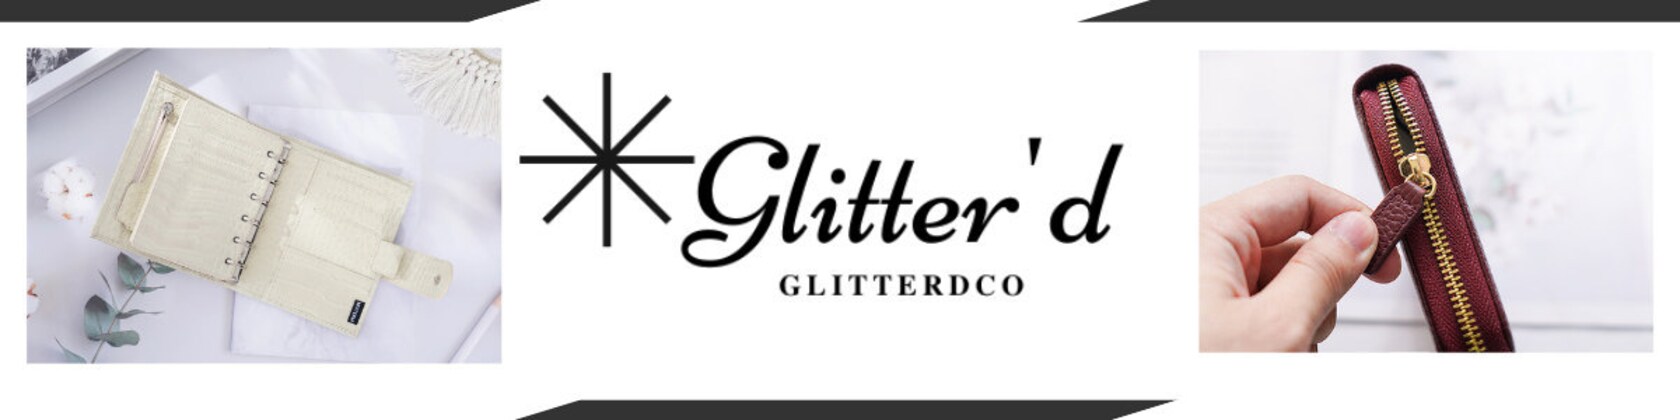 Moterm A5 2.0 Luxe Journal – Glitterdco